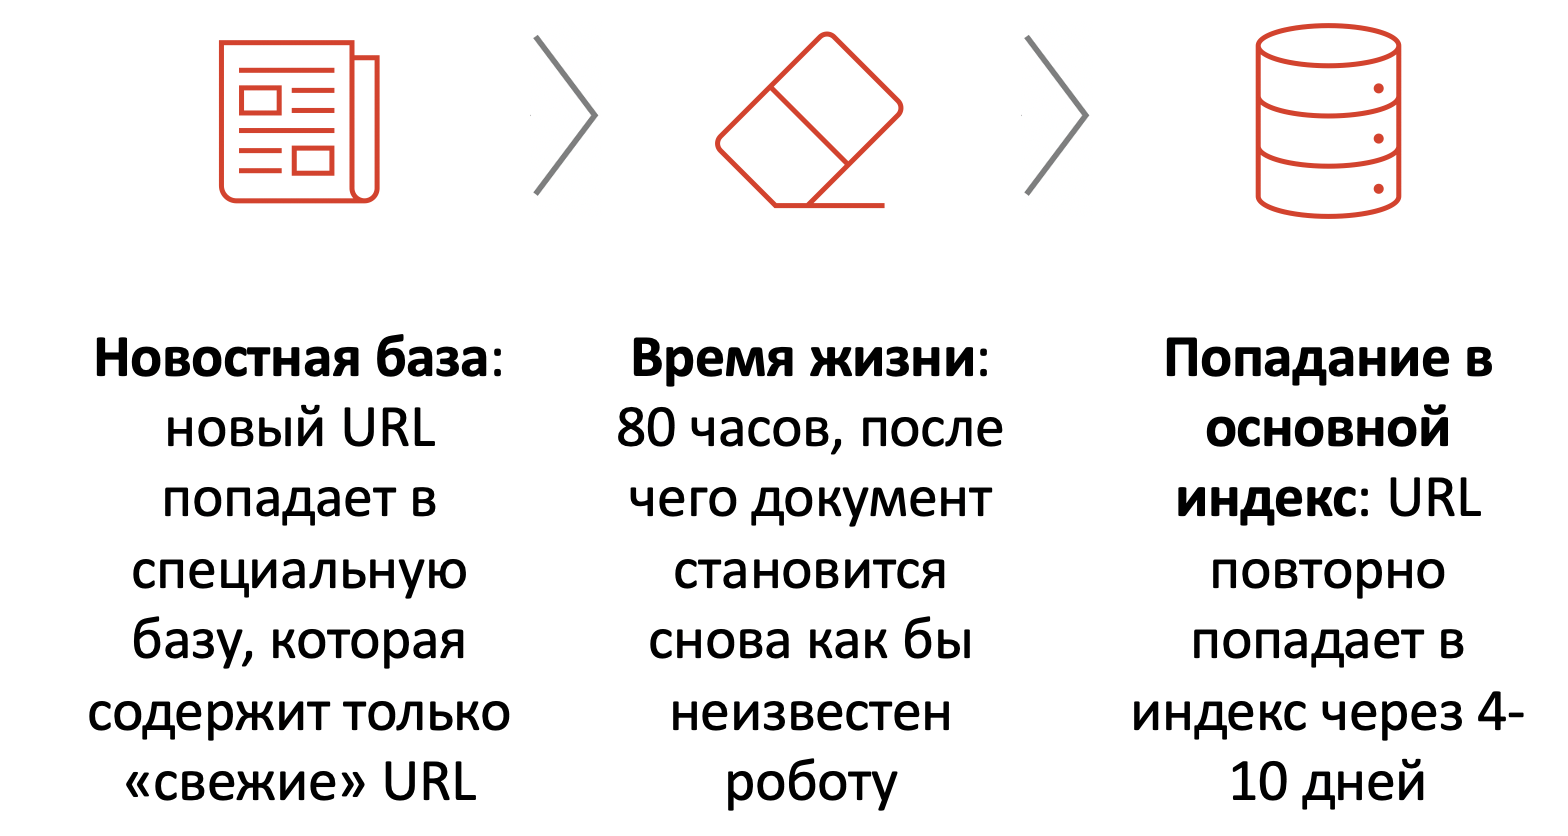 Путь нового URL, который был проиндексирован быстроботом Яндекса